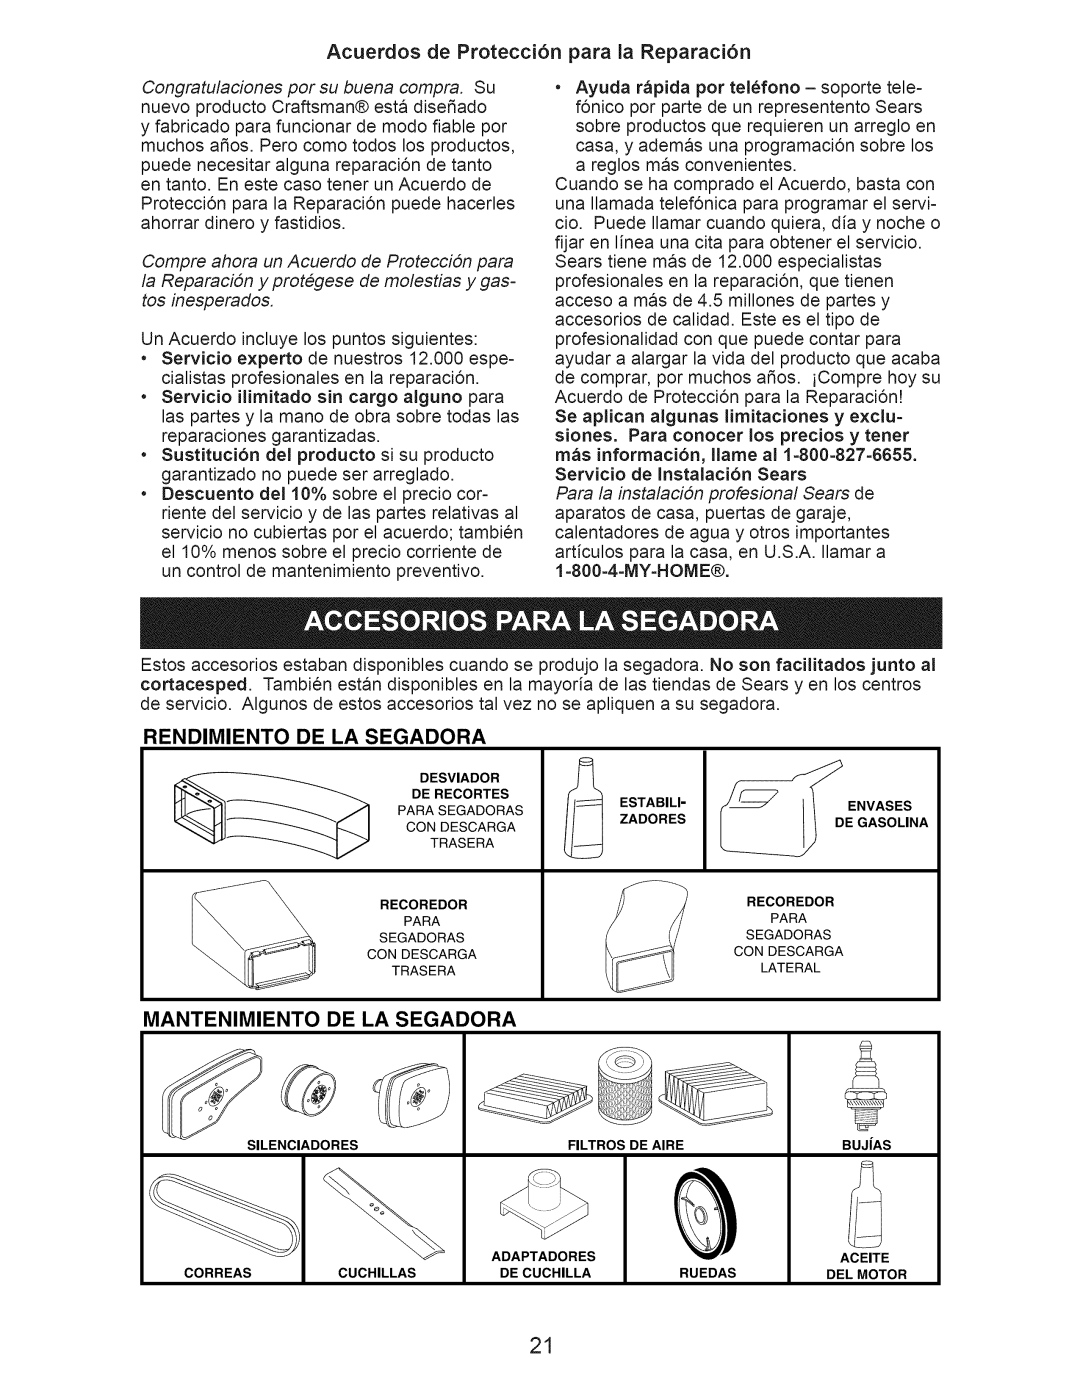 Craftsman 917.389050 owner manual Acuerdos de Protecci6n para la Reparaci6n, Rendimiento, De La Segadora, Mantenimiento 